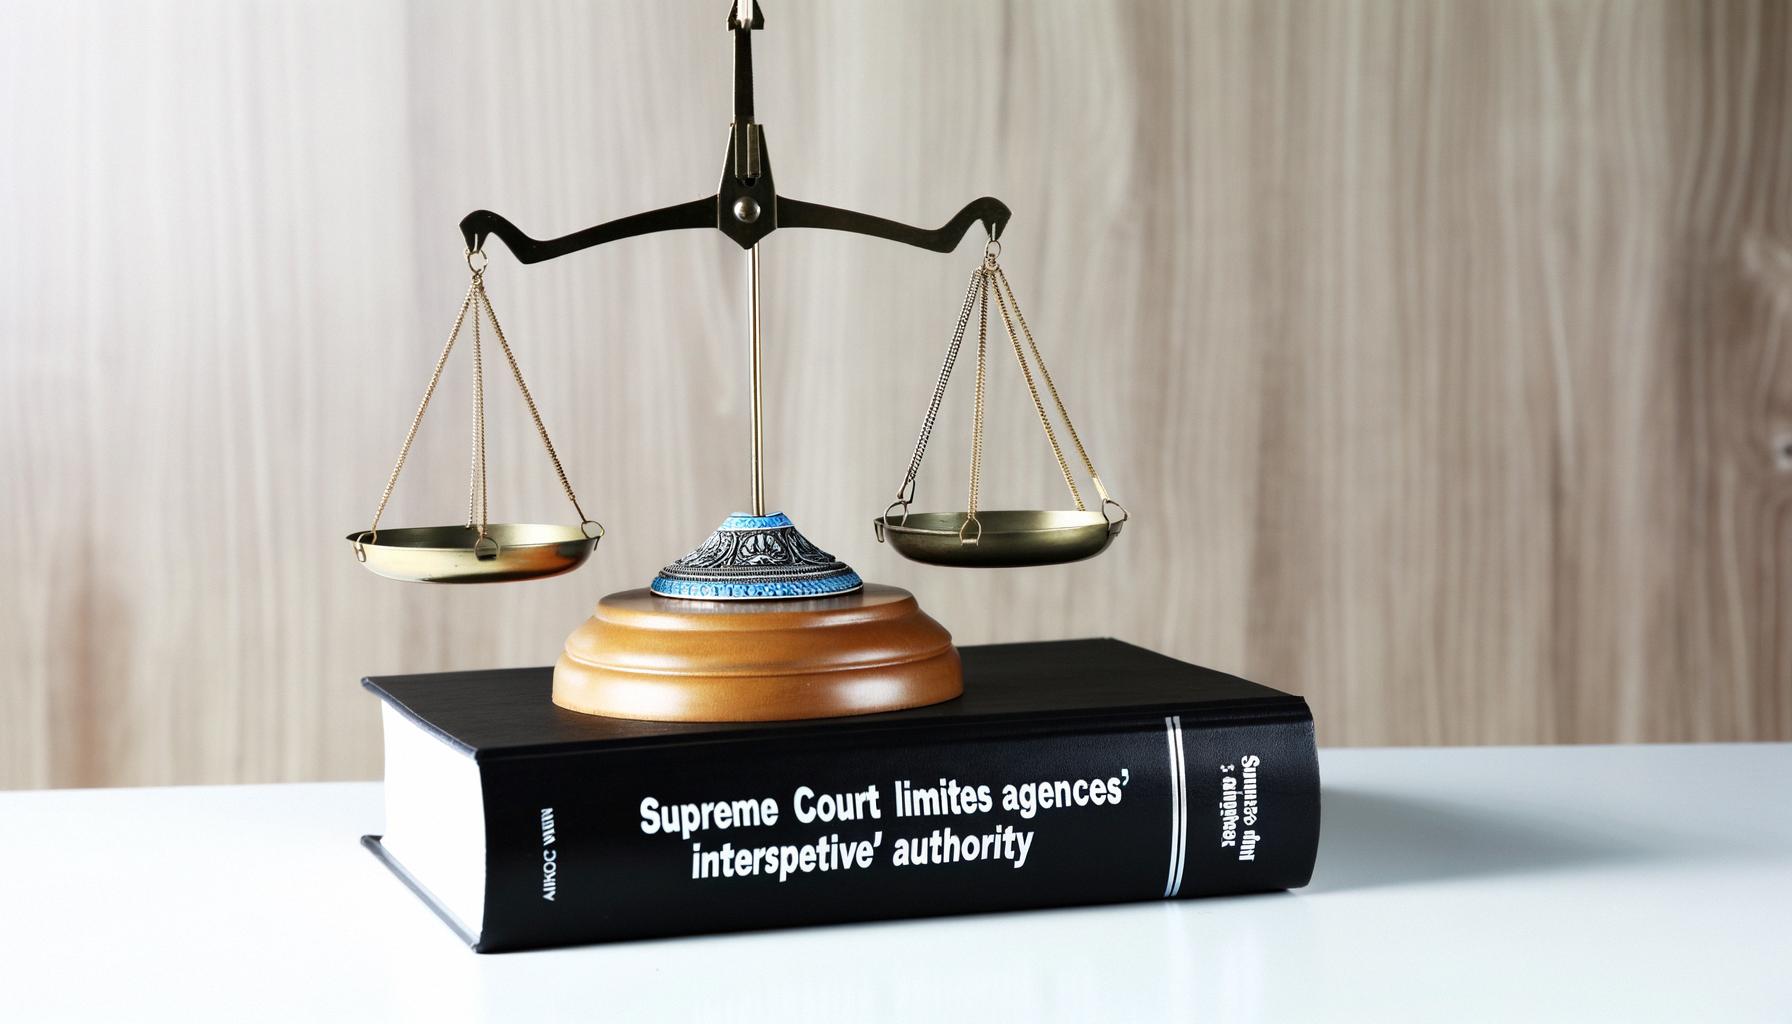 Supreme Court limits agencies' interpretive authority